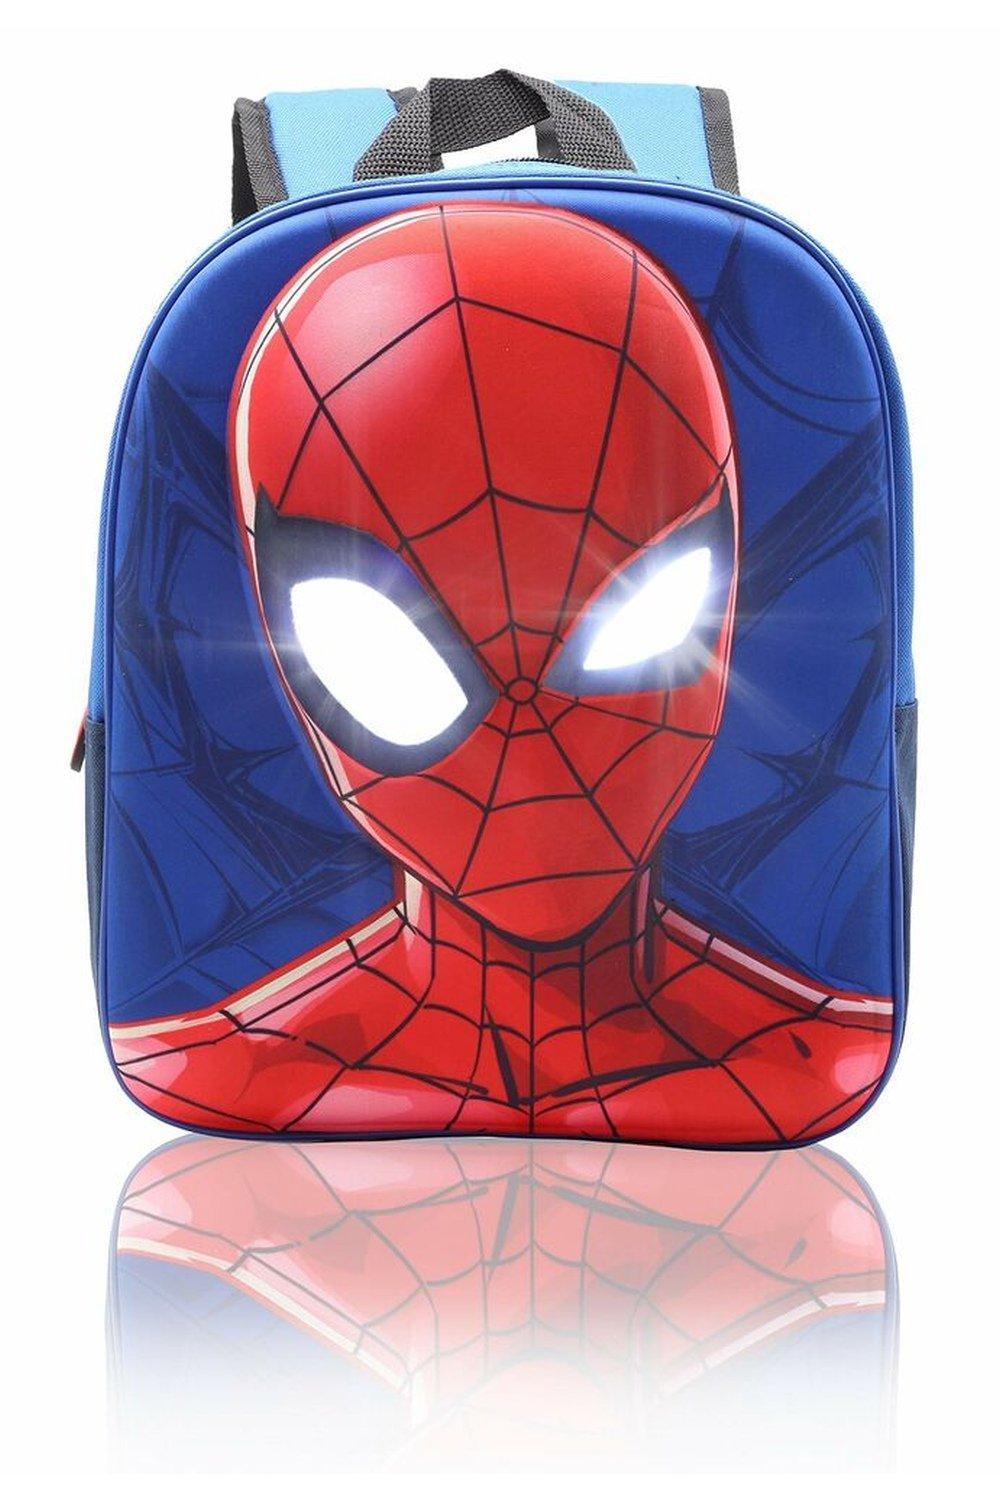 Рюкзак Человека-паука с подсветкой глаз Marvel, синий детский школьный ранец с принтом динозавра школьный рюкзак для мальчиков подростков сумка для книг для мальчиков